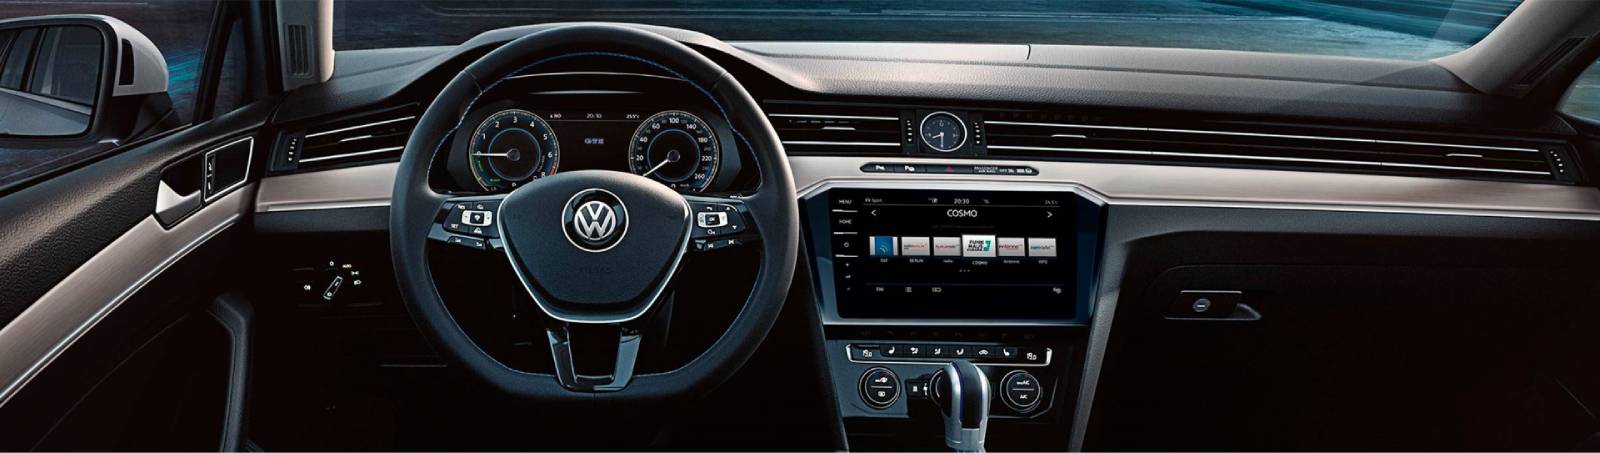 Nuevo-Volkswagen